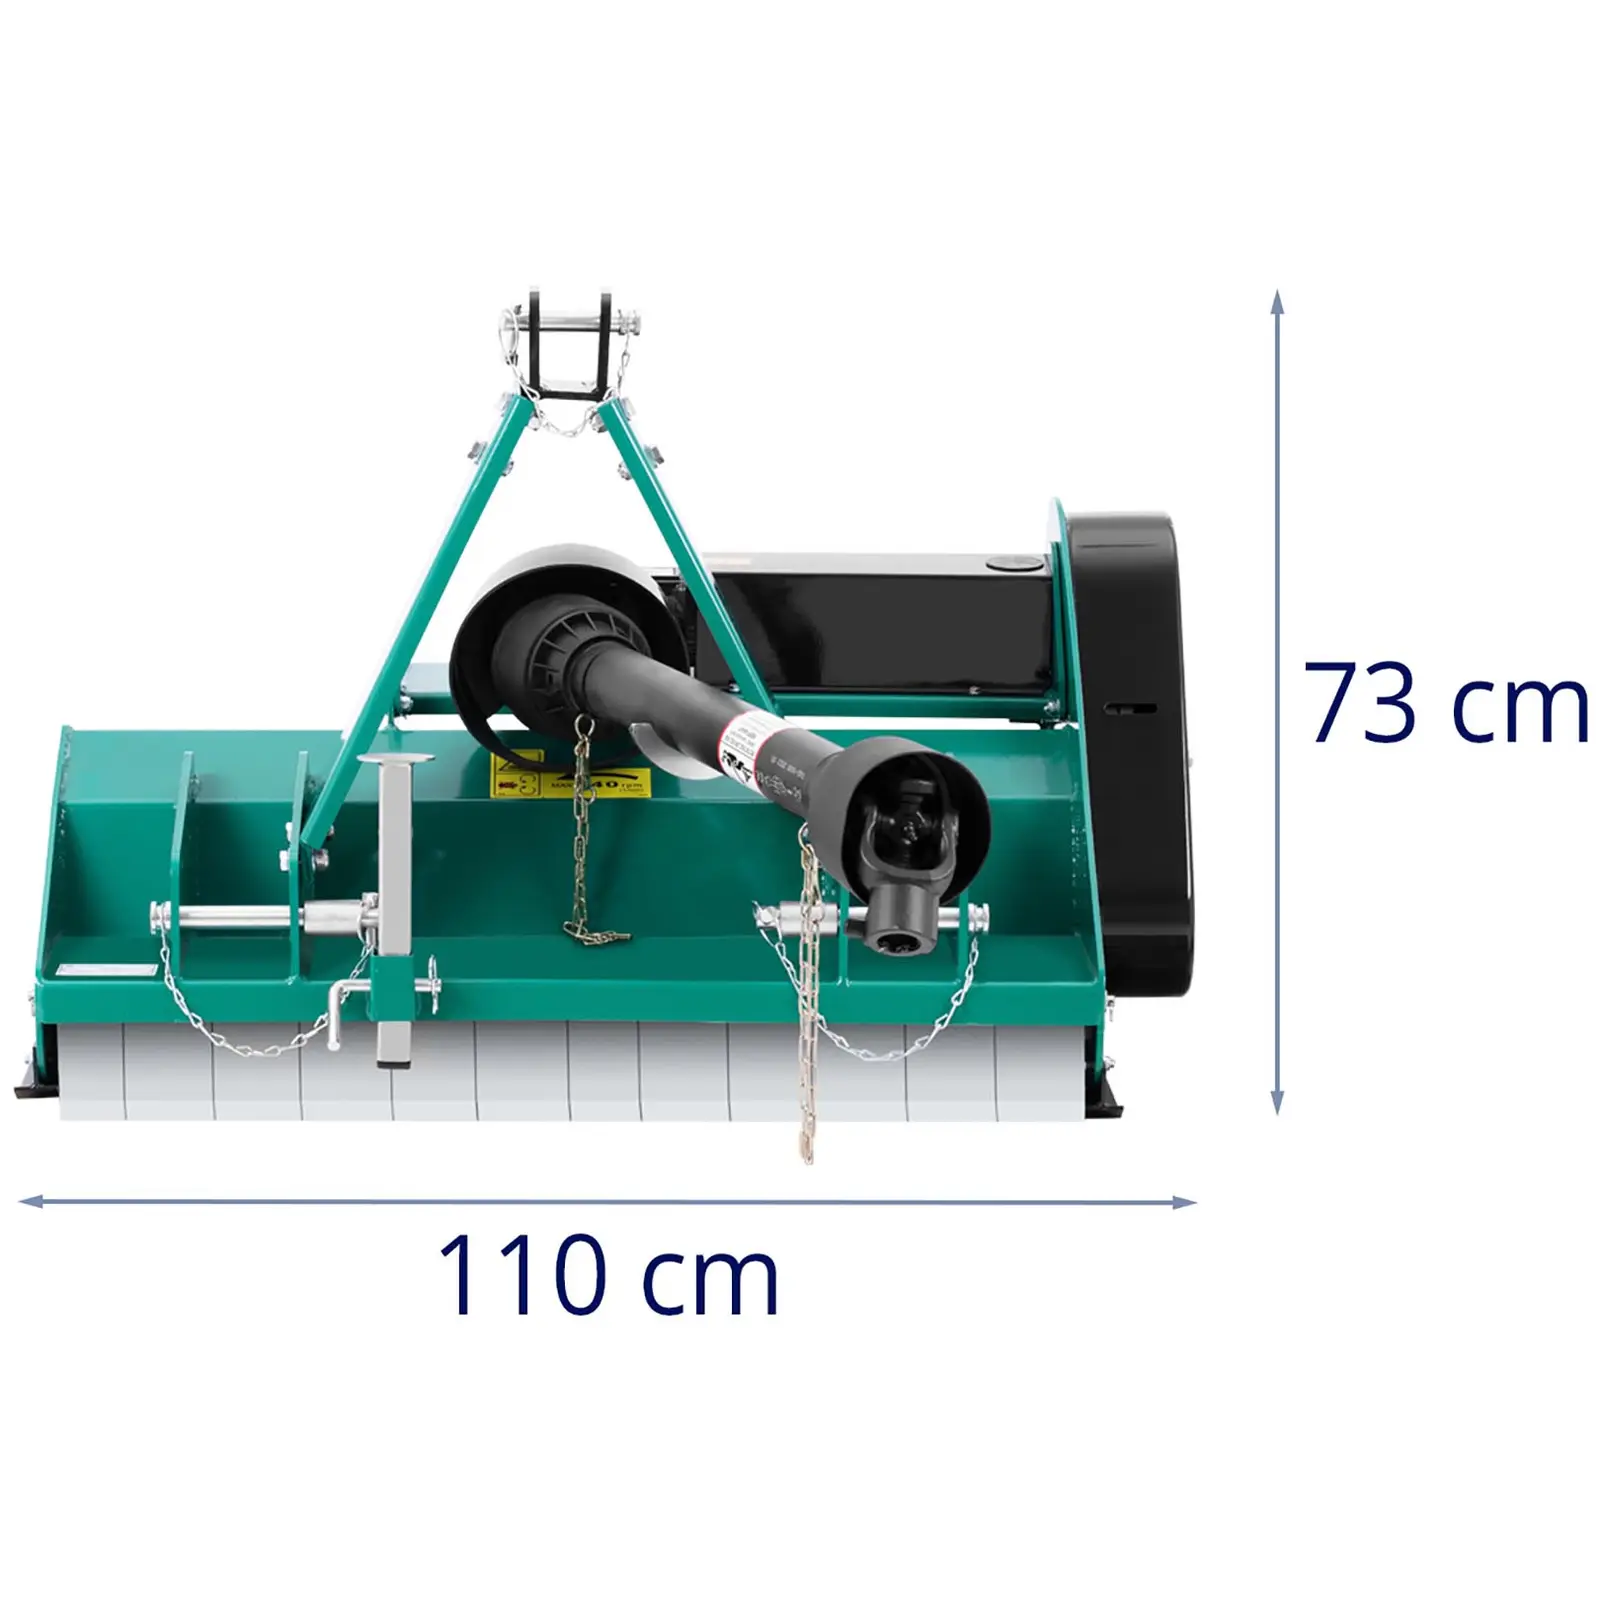 Kosiarka bijakowa - szerokość robocza 950 mm - zaczep trzypunktowy (kat. I)